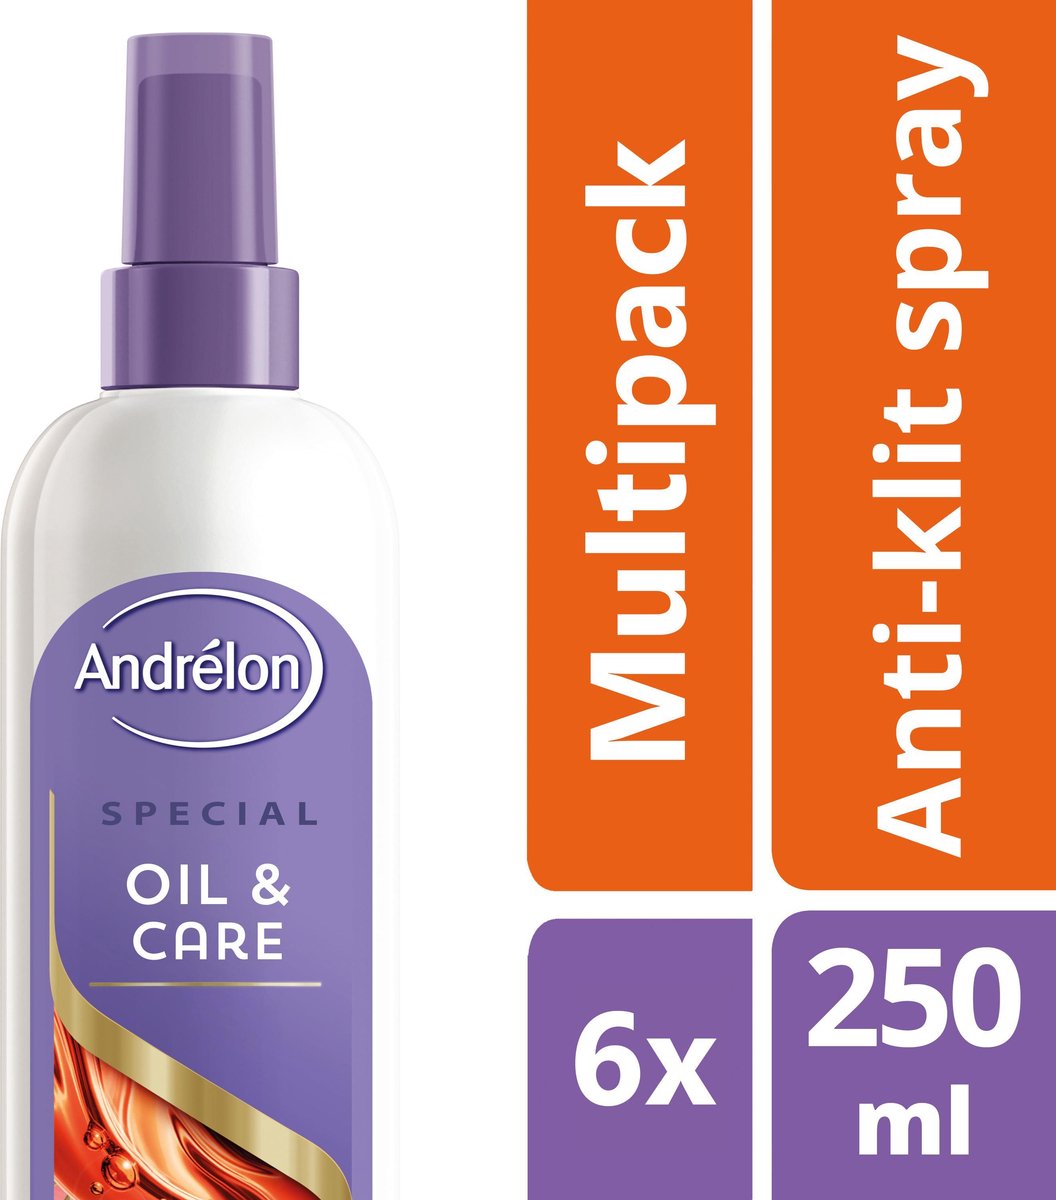 Andrélon Oil & Care - 6 x 250 ml - Anti-Klit Haarlak - Voordeelverpakking - Andrélon